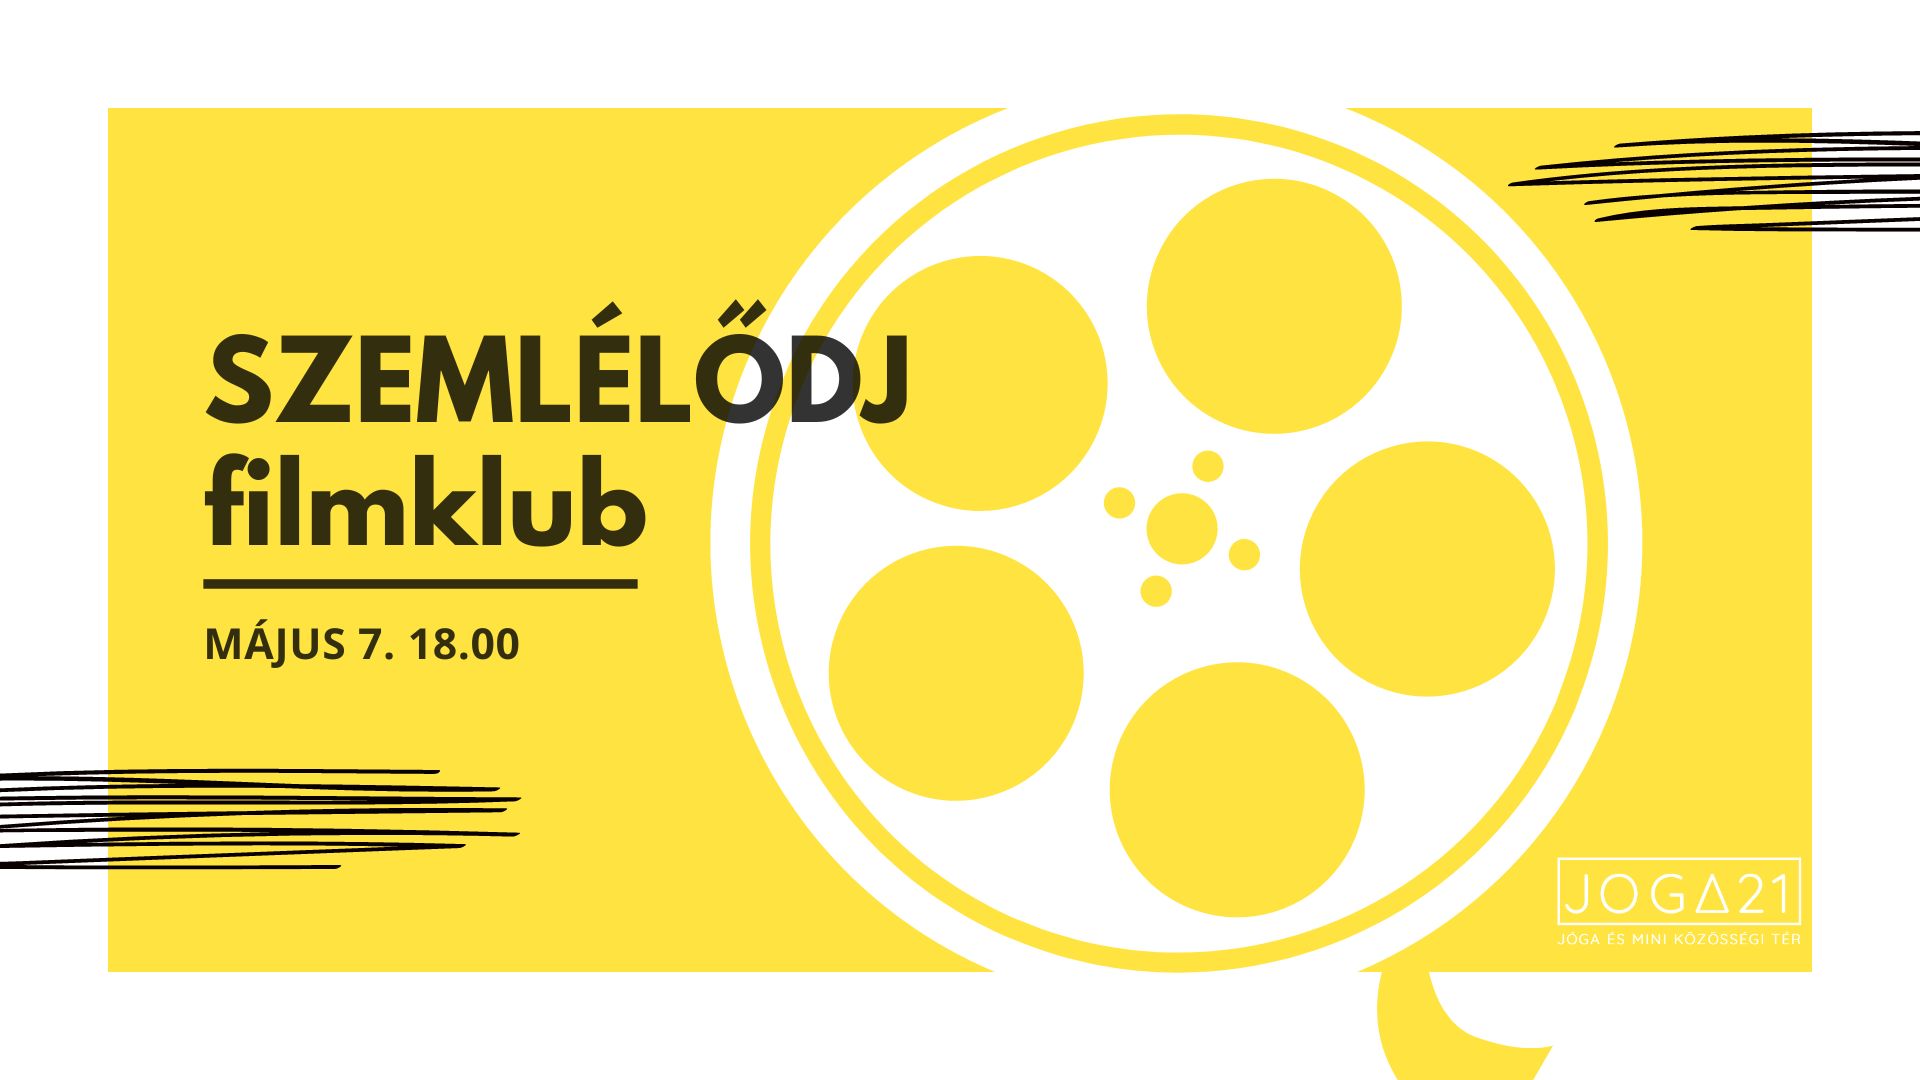 SZEMLÉLŐDJ filmklub